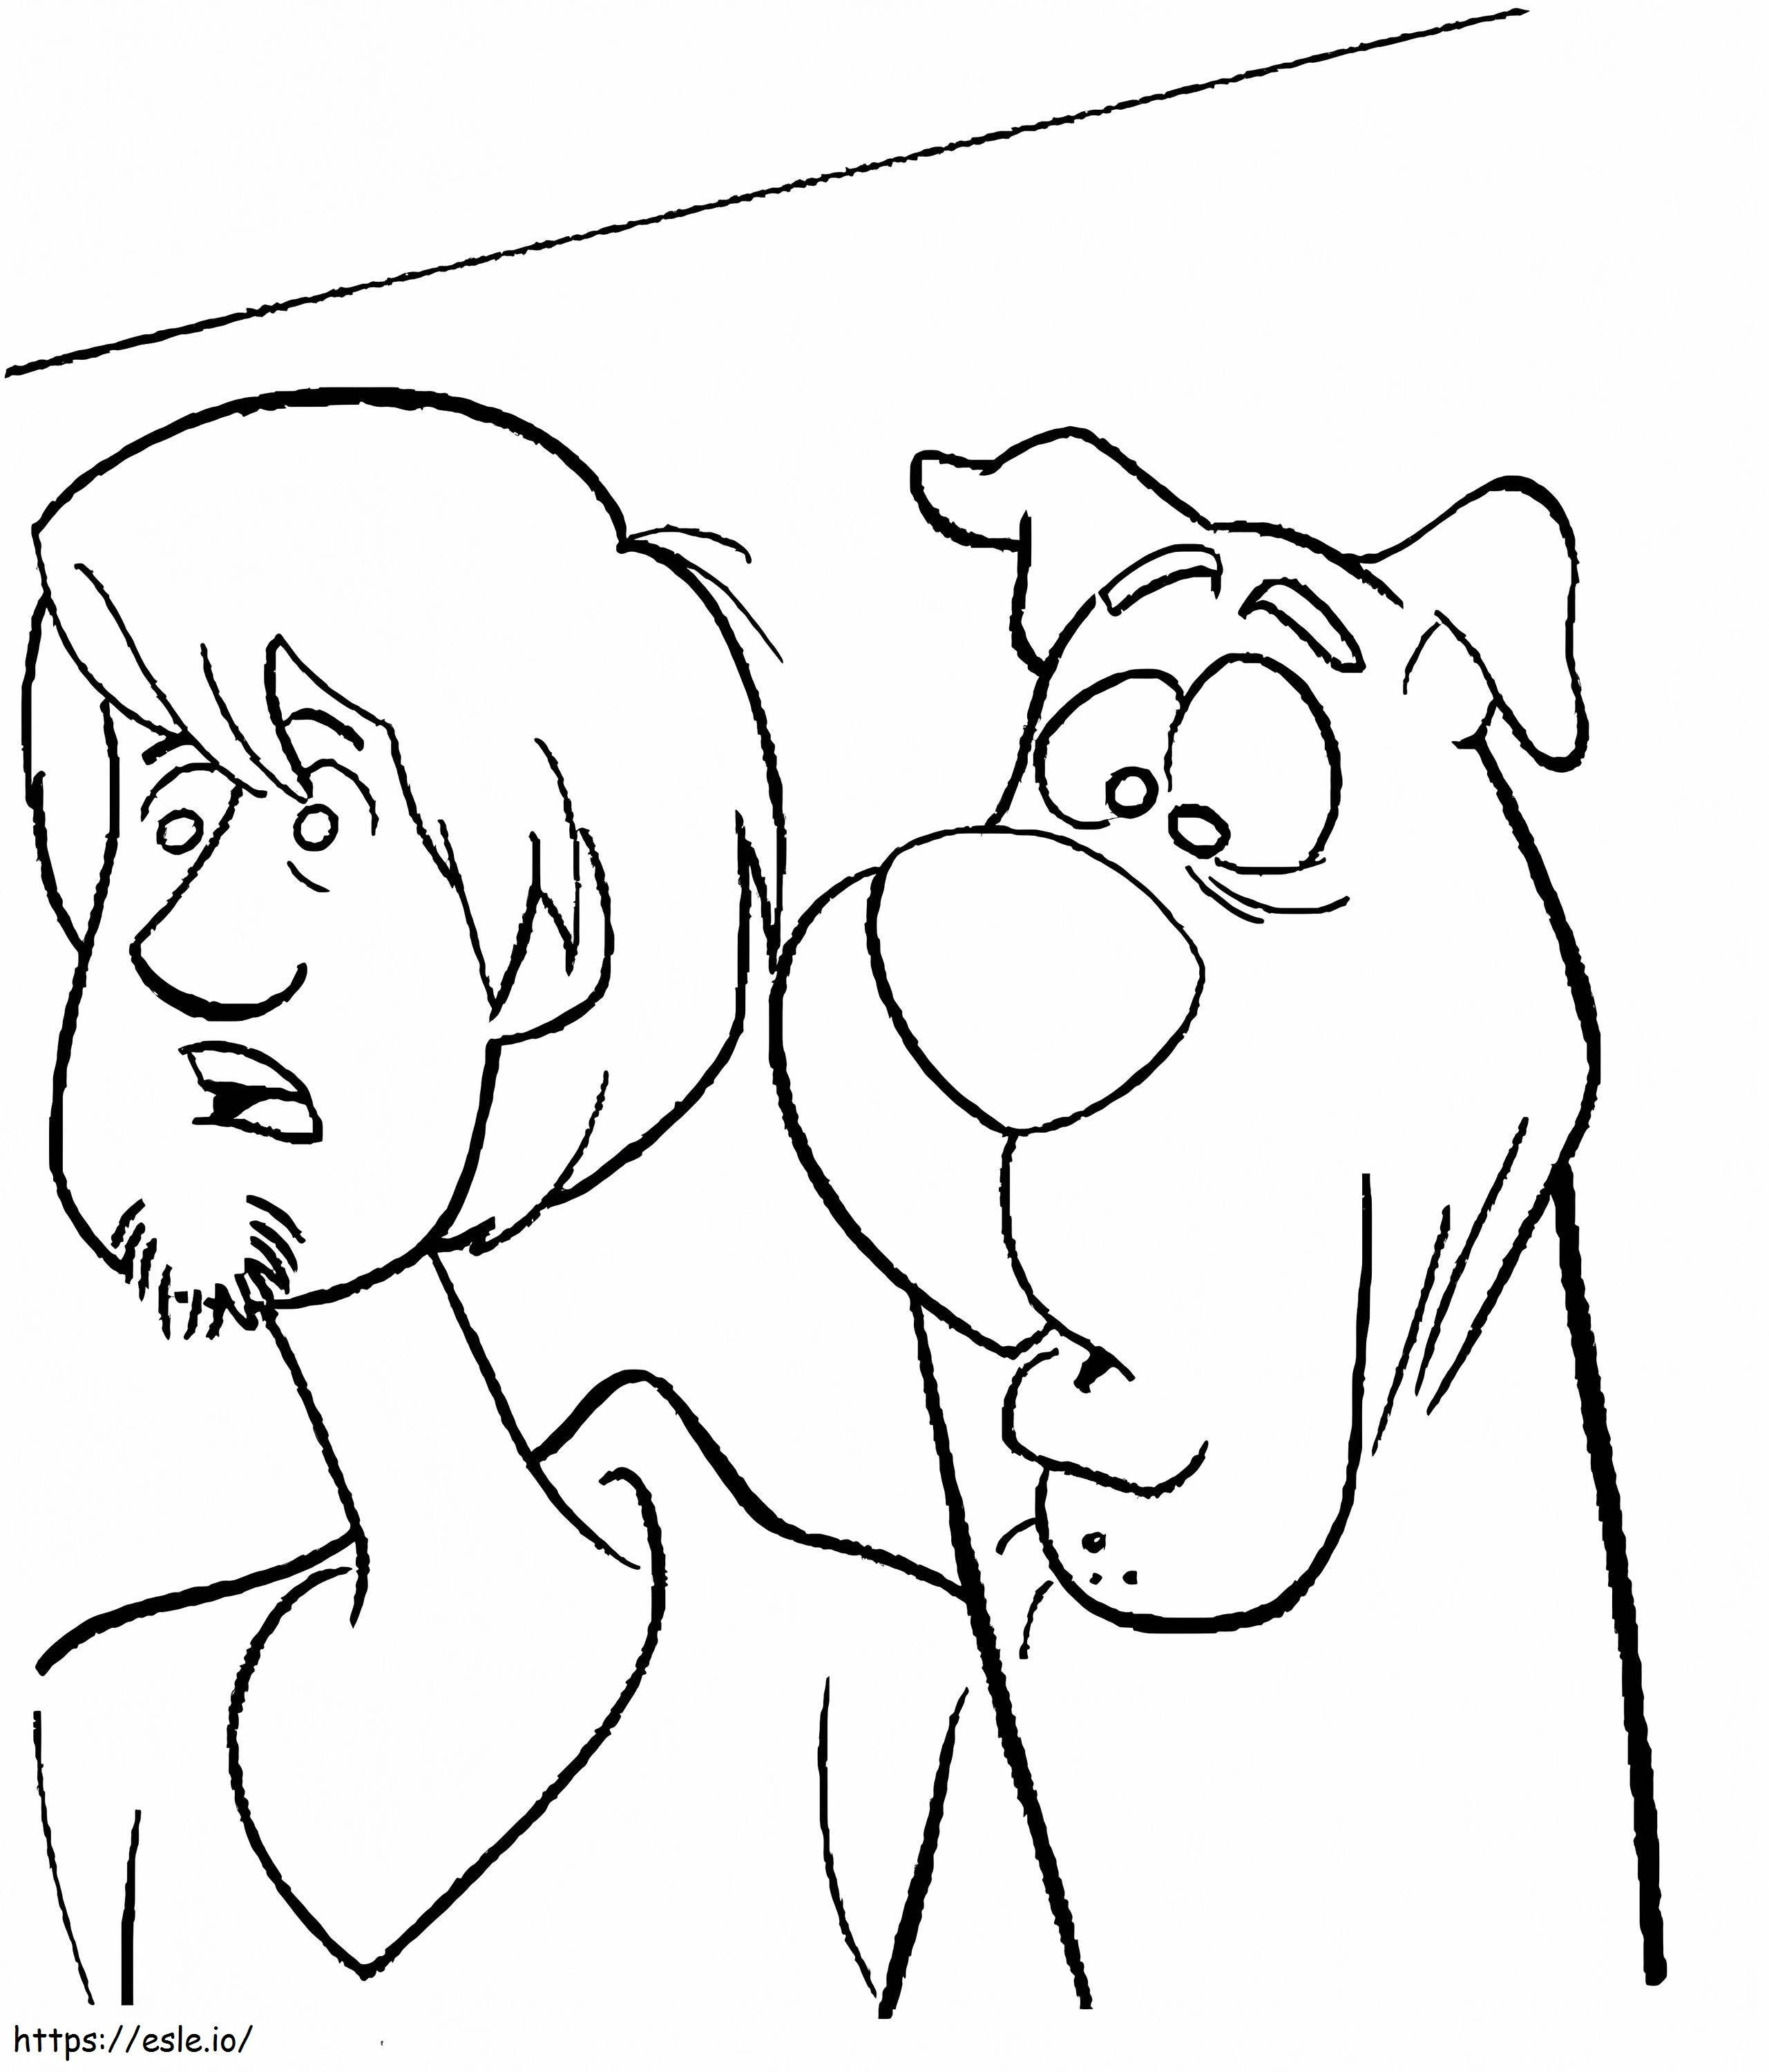 Furry i Scooby Doo śmieszne kolorowanka